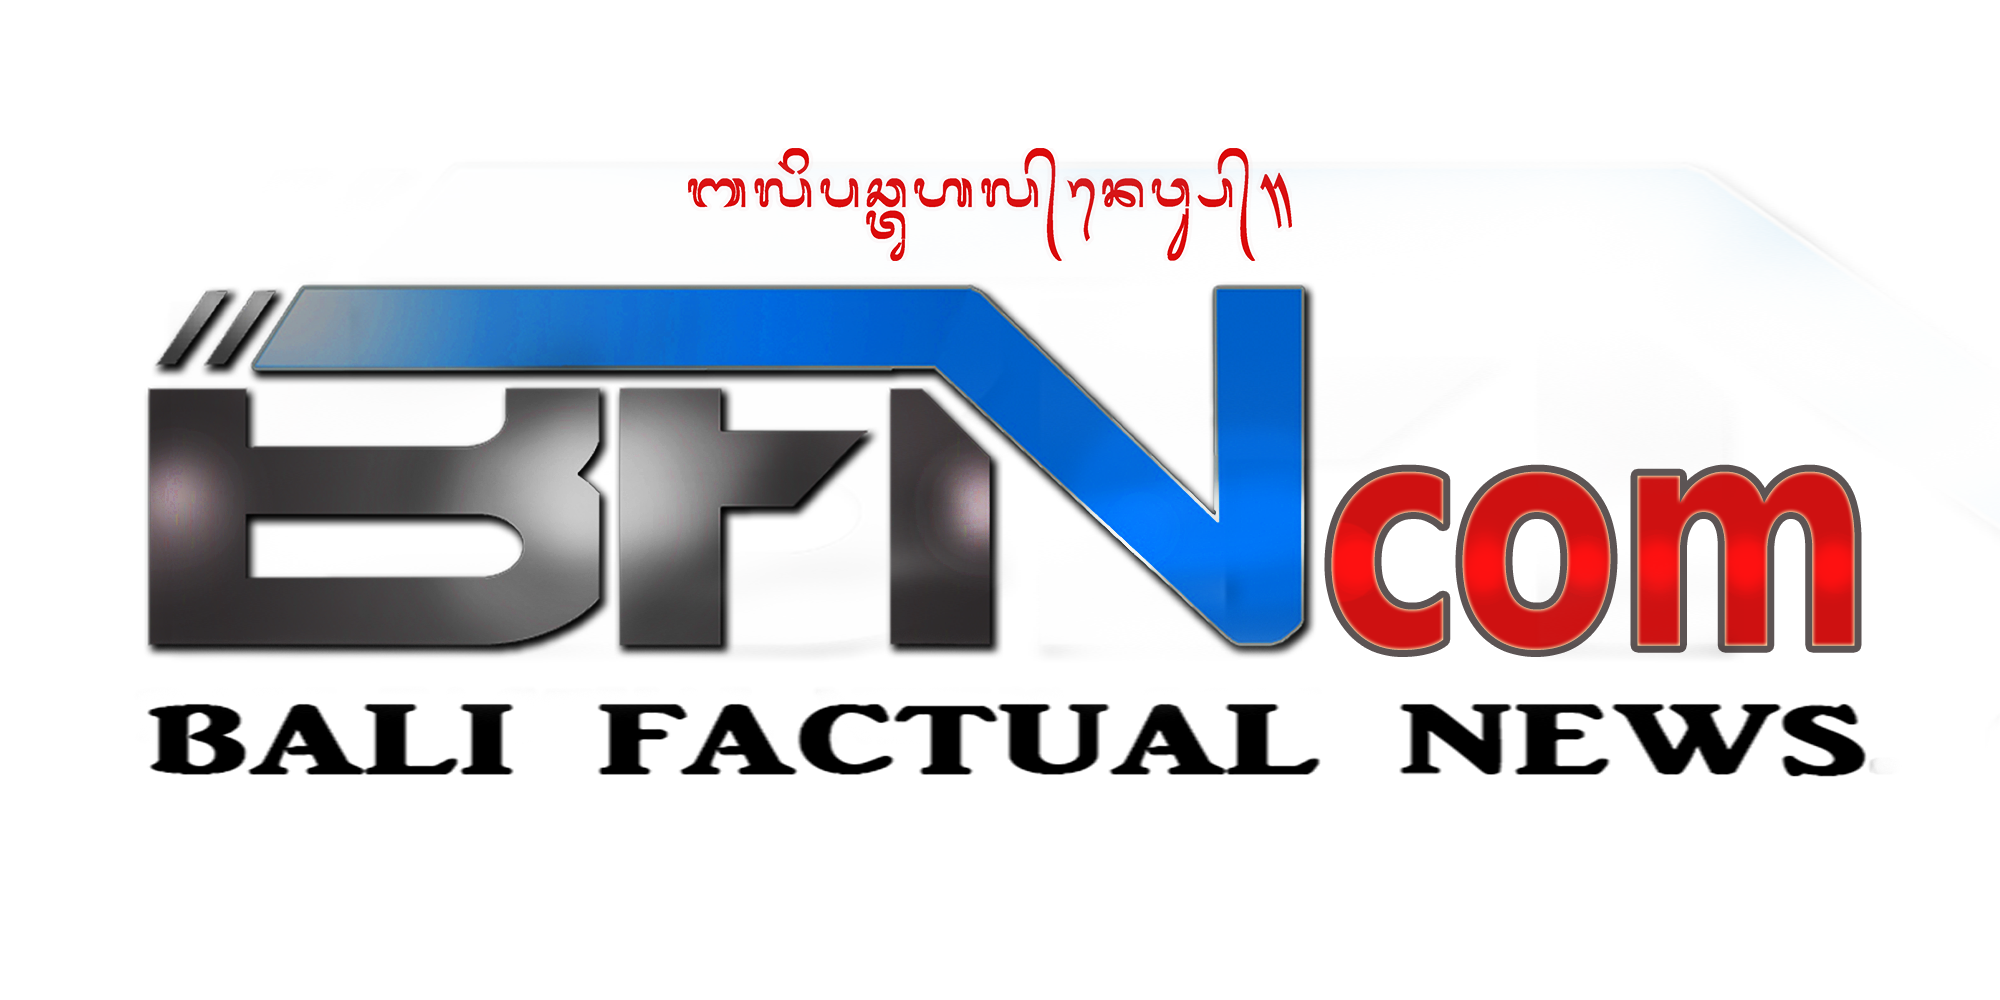 Bali Factual News, Berita Terkini di Bali, Tajam, Lugas dan Bertanggung Jawab